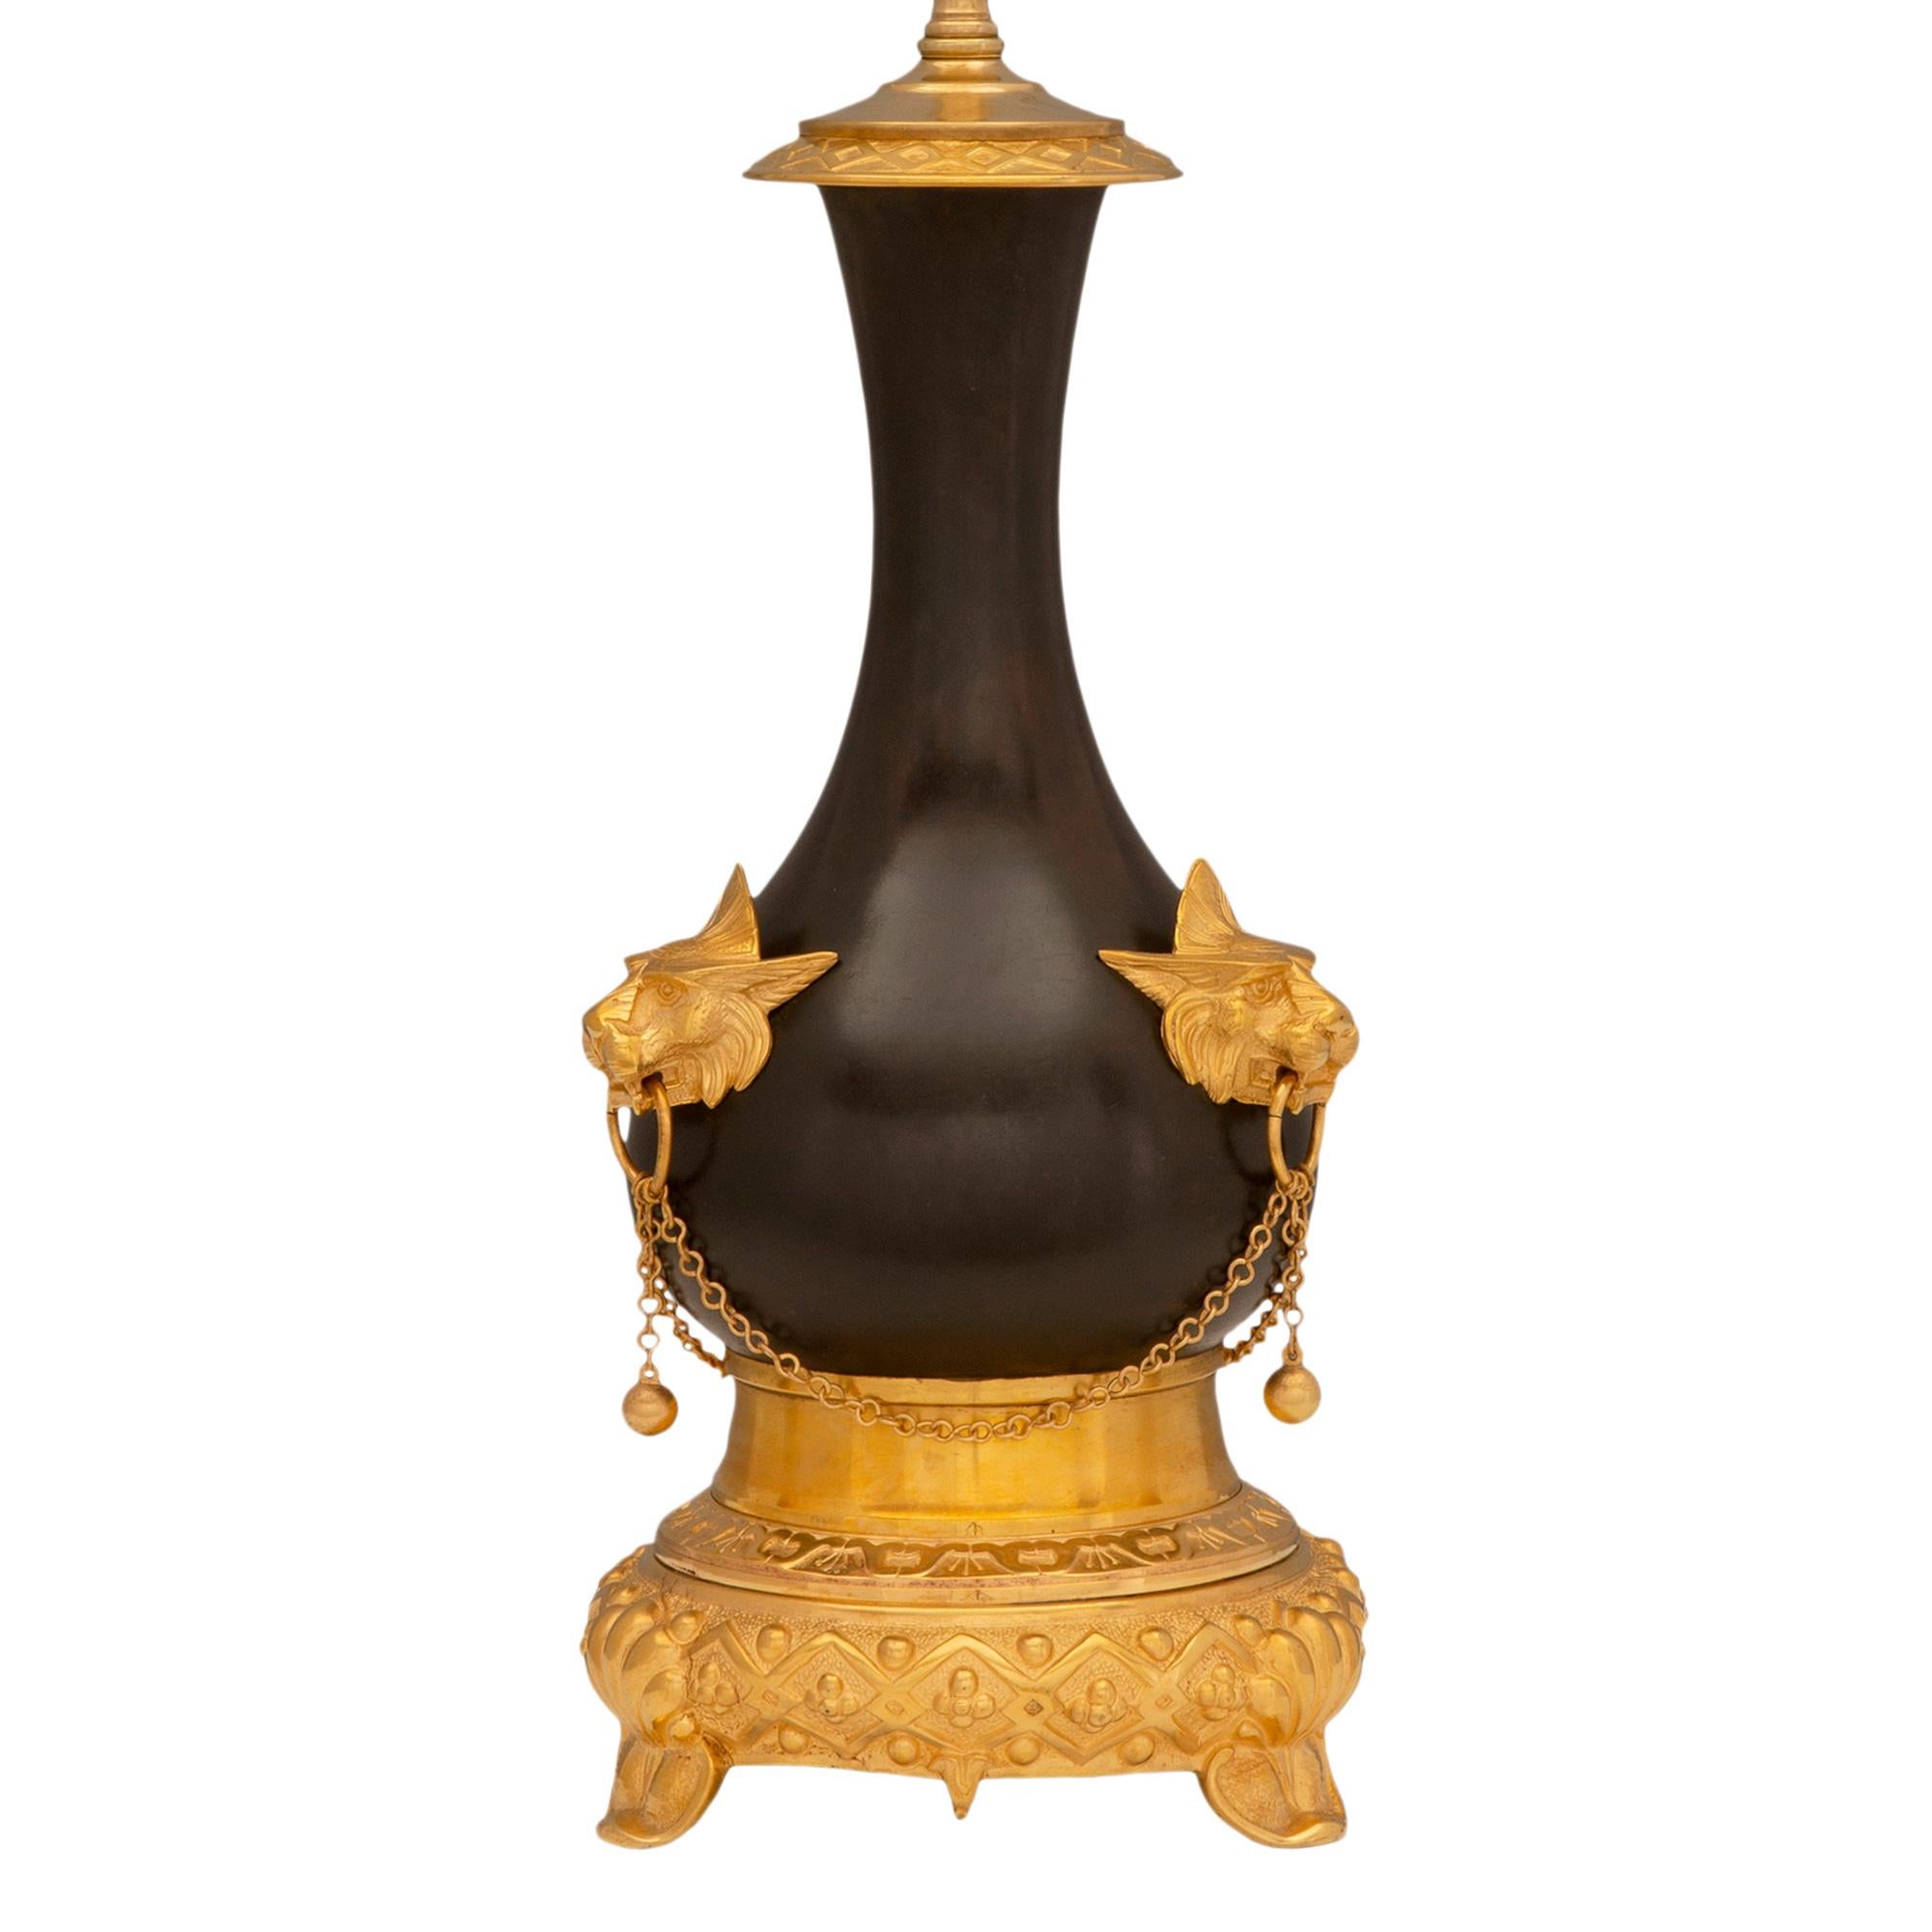 Une remarquable paire de lampes françaises du 19ème siècle de style Renaissance en bronze patiné et bronze doré. Chaque lampe est surélevée par une élégante base circulaire avec trois supports en forme de coquillage et un magnifique et unique